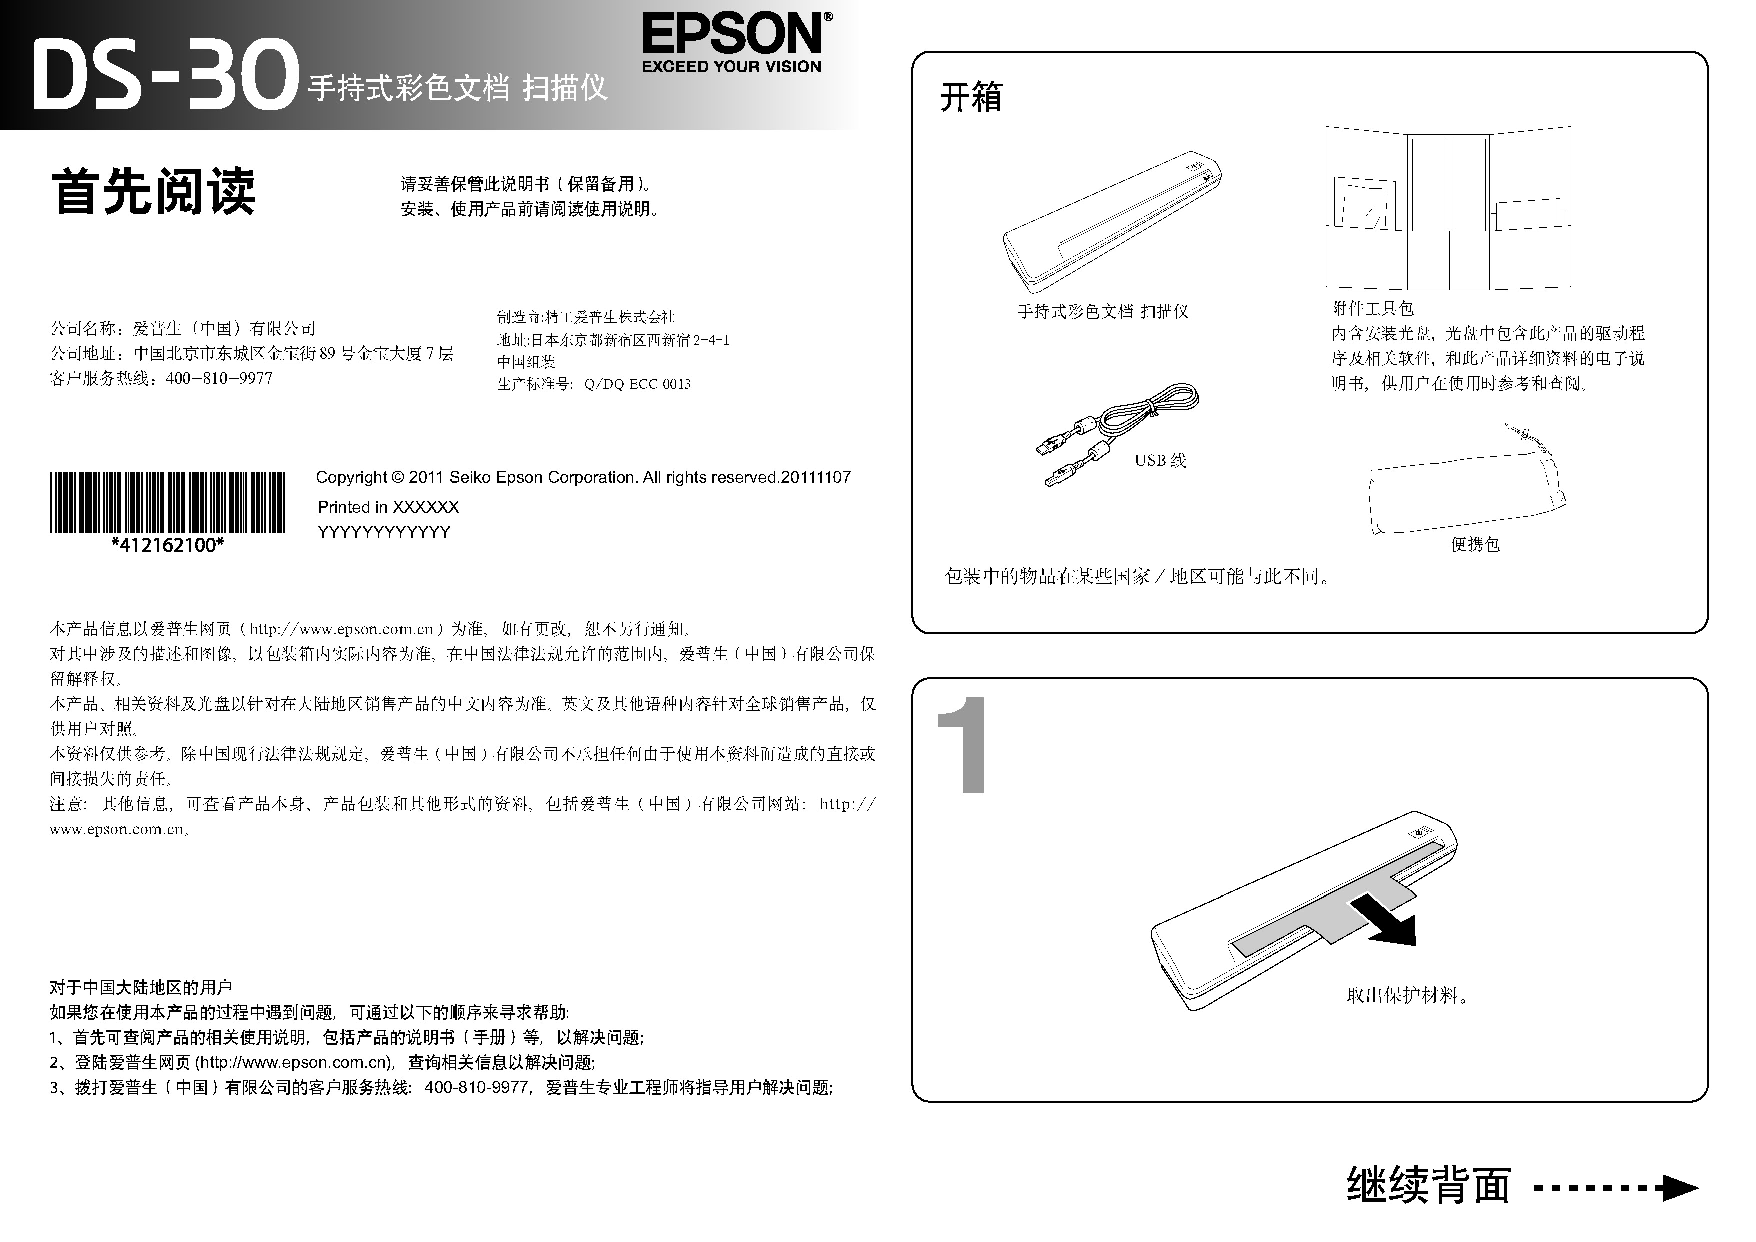 爱普生 Epson DS-30 快速安装指南 封面